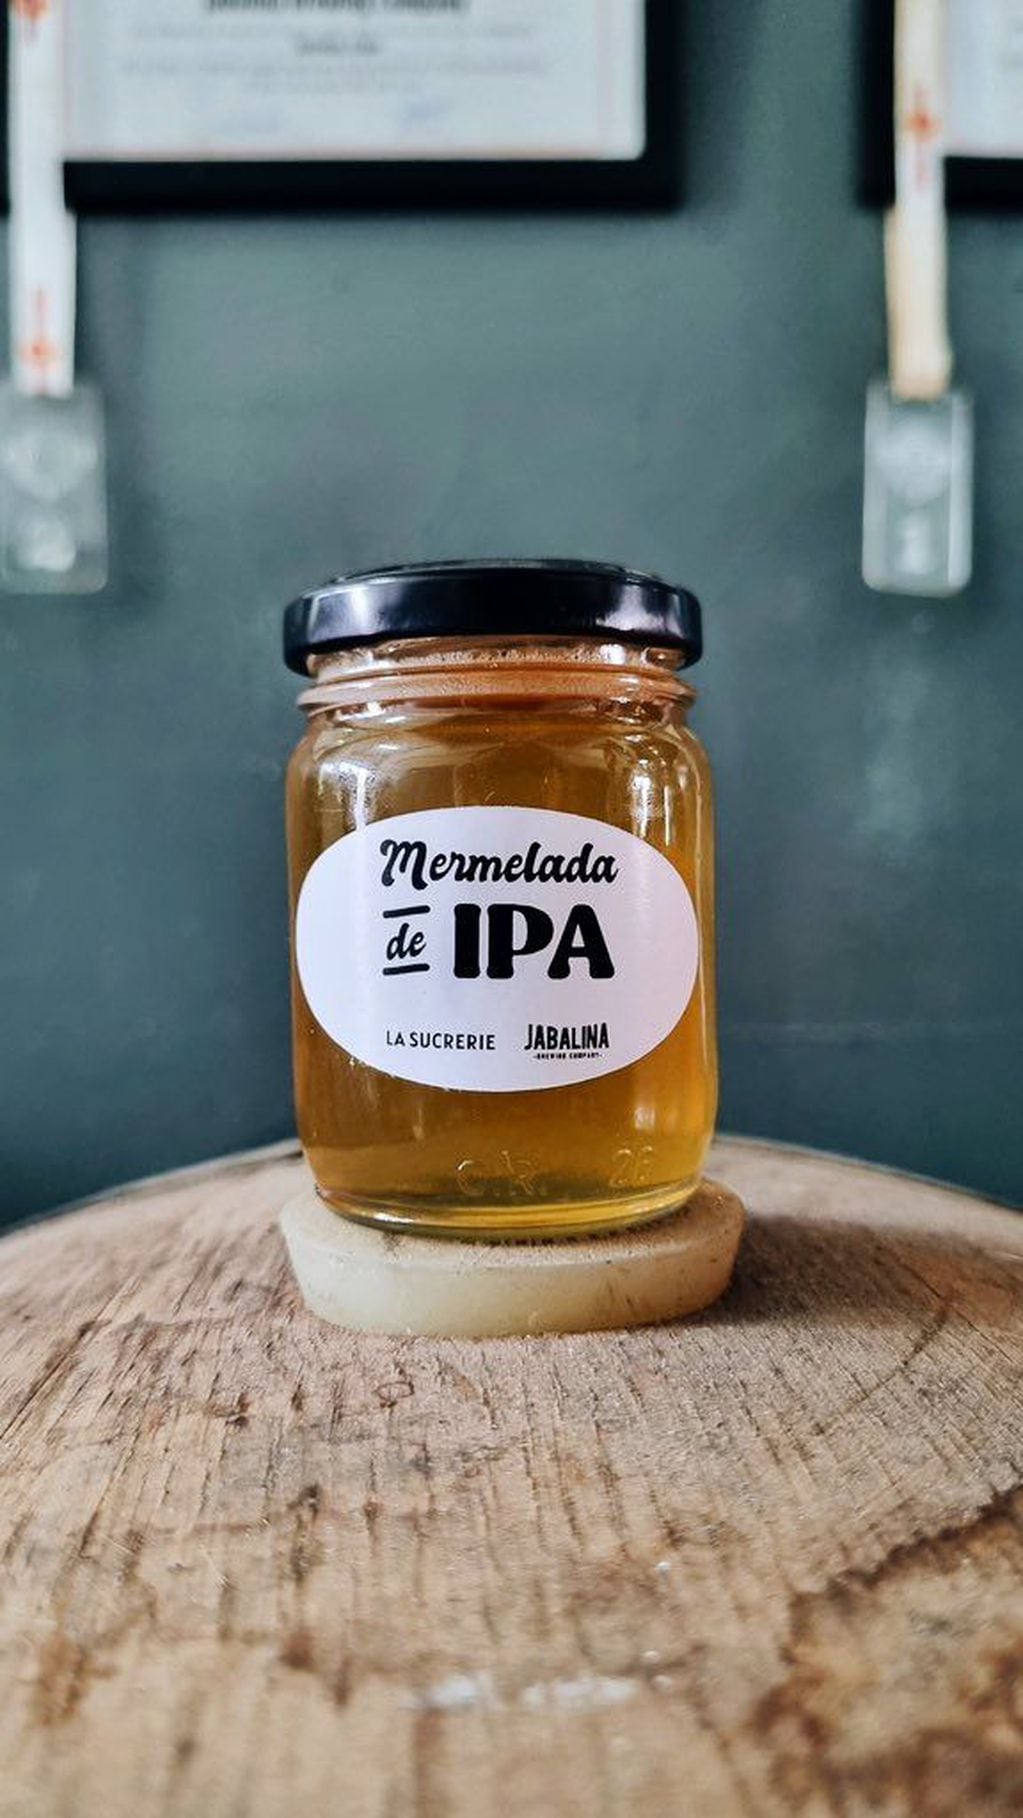 Así es la mermelada IPA, un dulce con sabor a cerveza que crearon dos emprendedores argentinos.